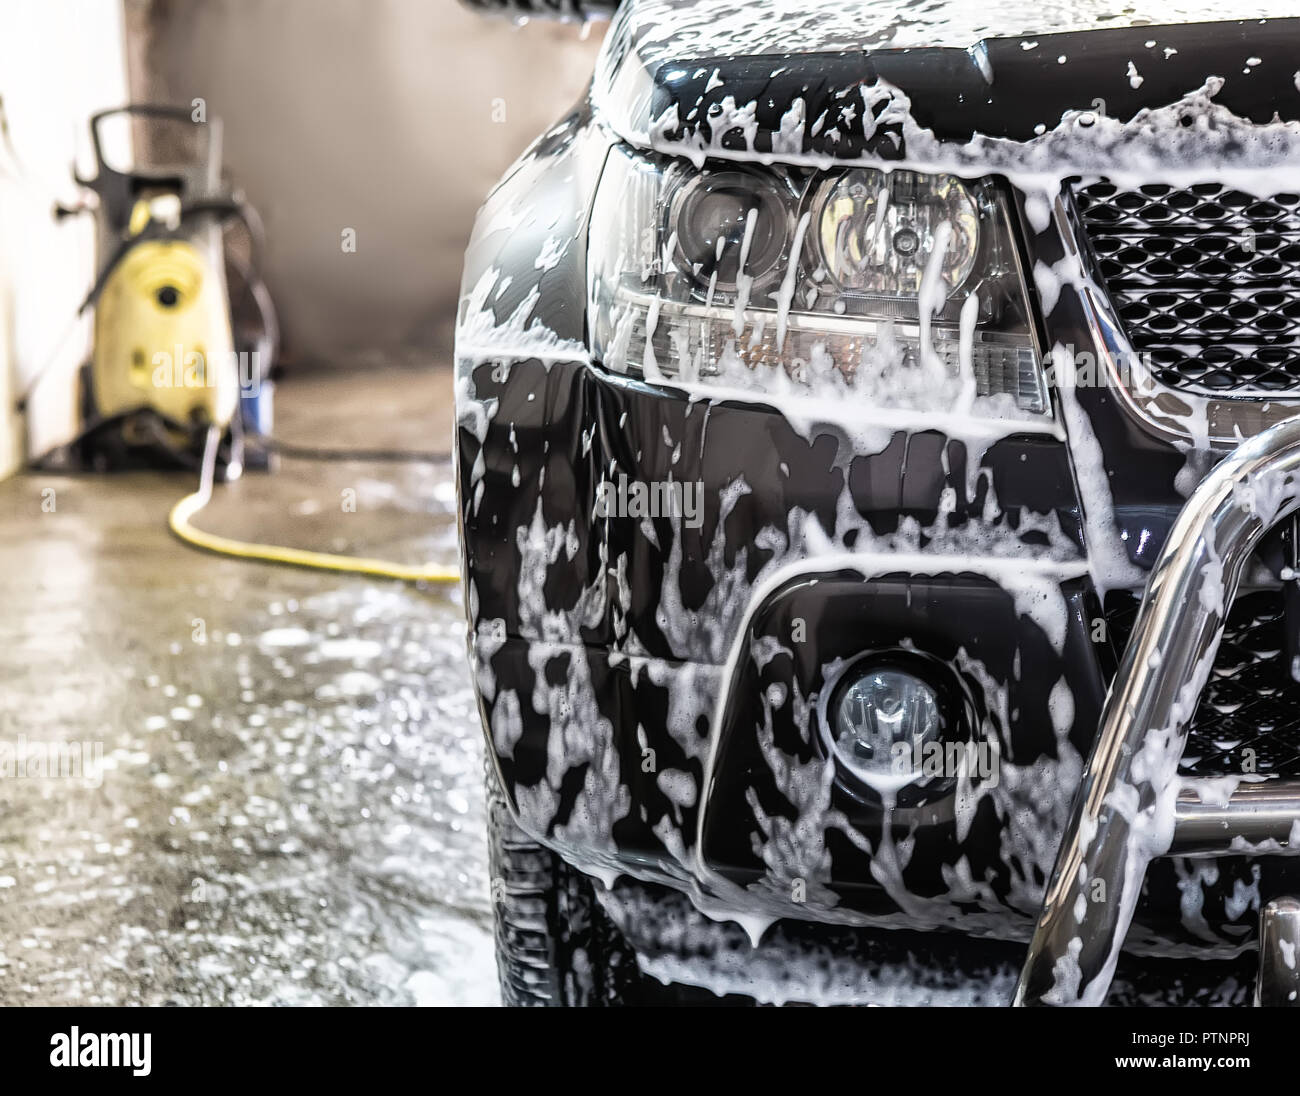 car at car wash shampoos Stock Photo